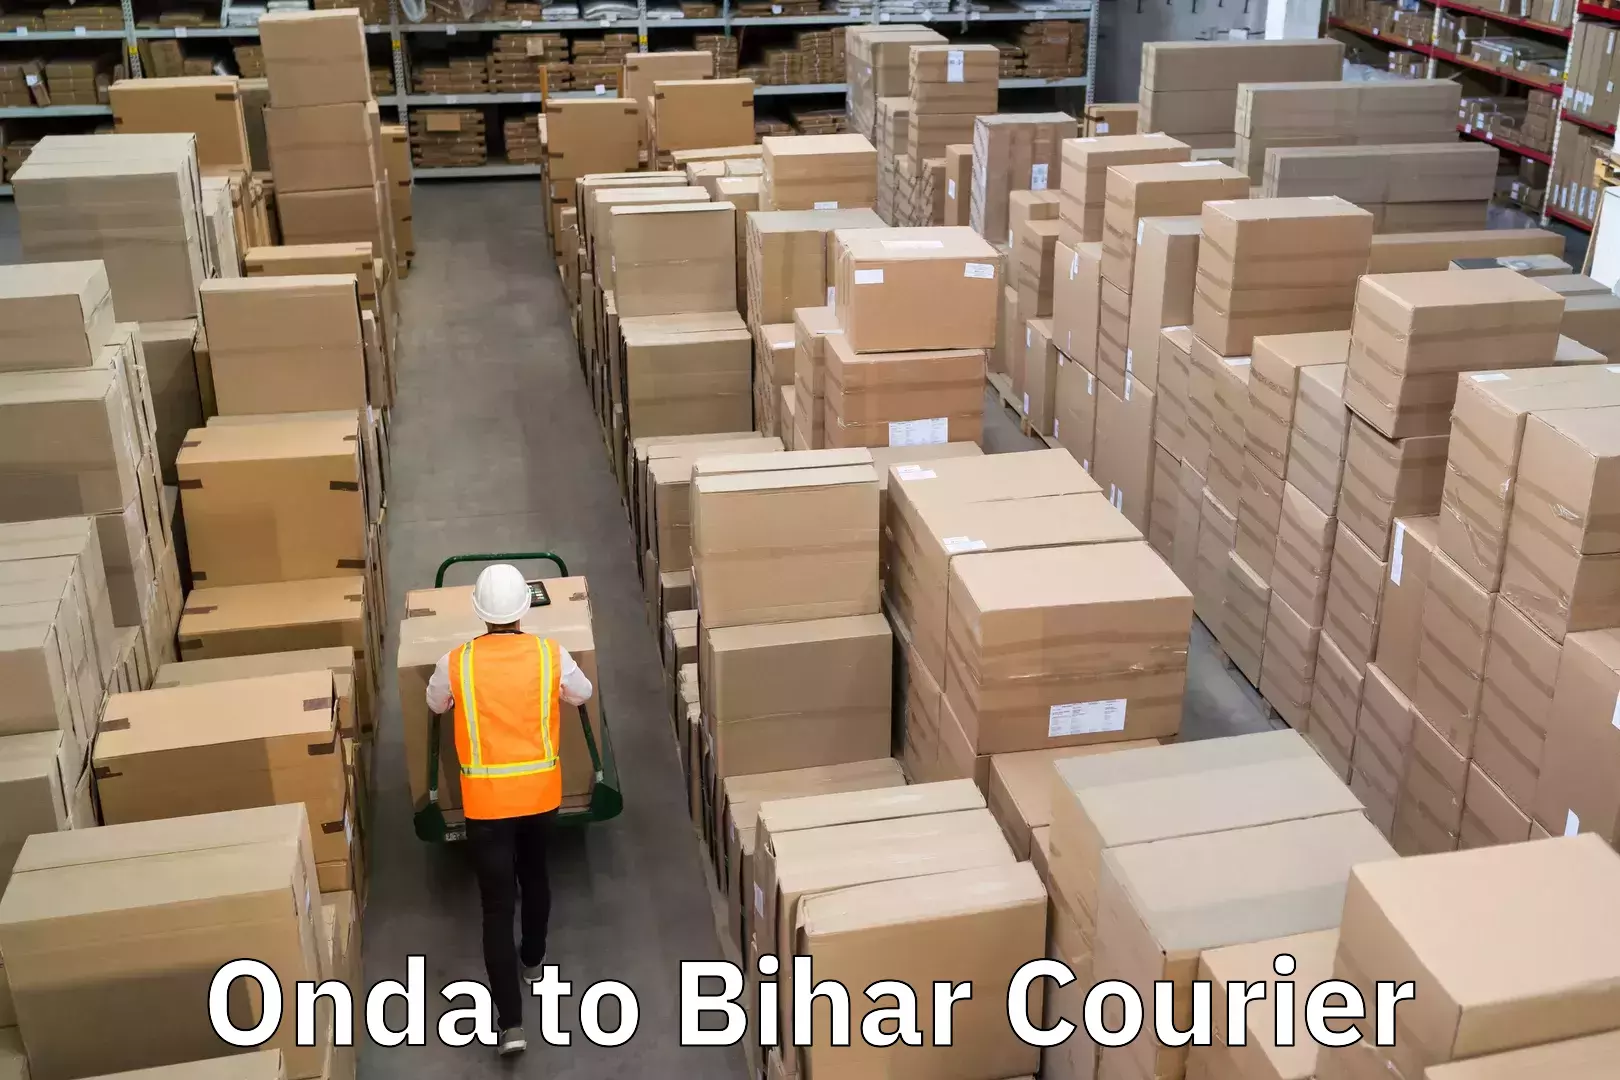 Courier app Onda to Bihar